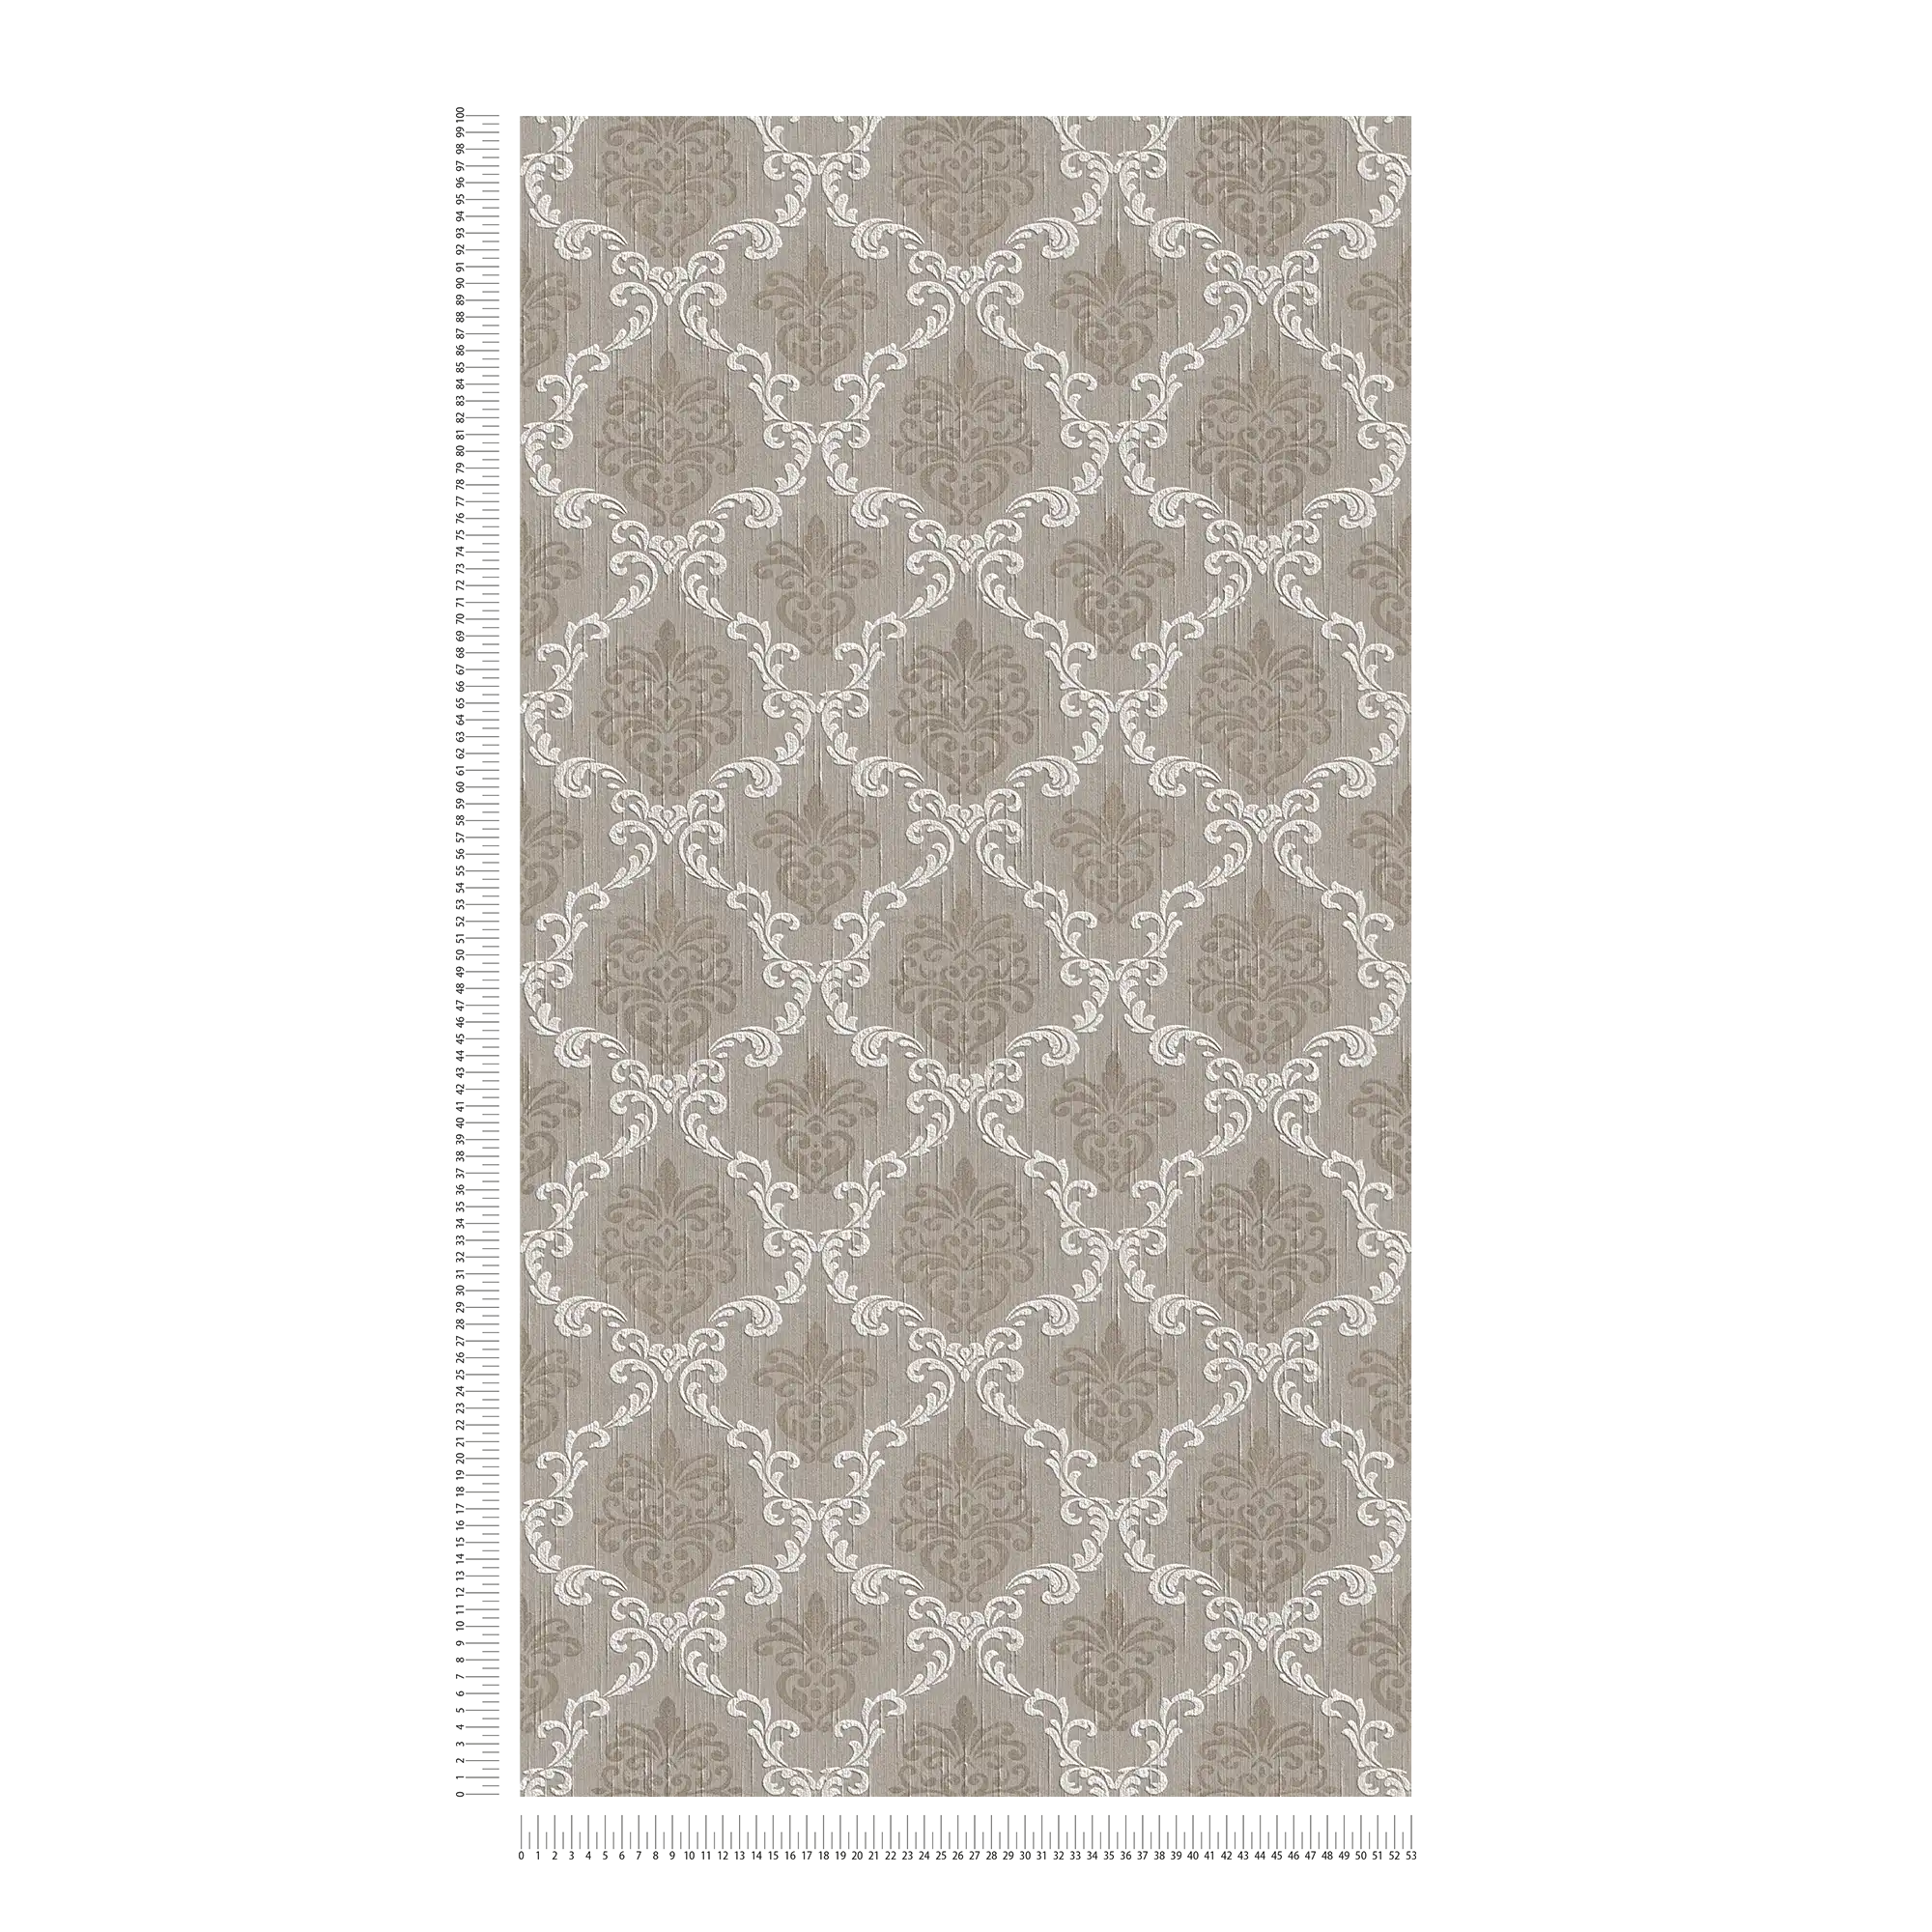             Carta da parati in tessuto non tessuto con motivi ornamentali in stile coloniale - beige, grigio
        